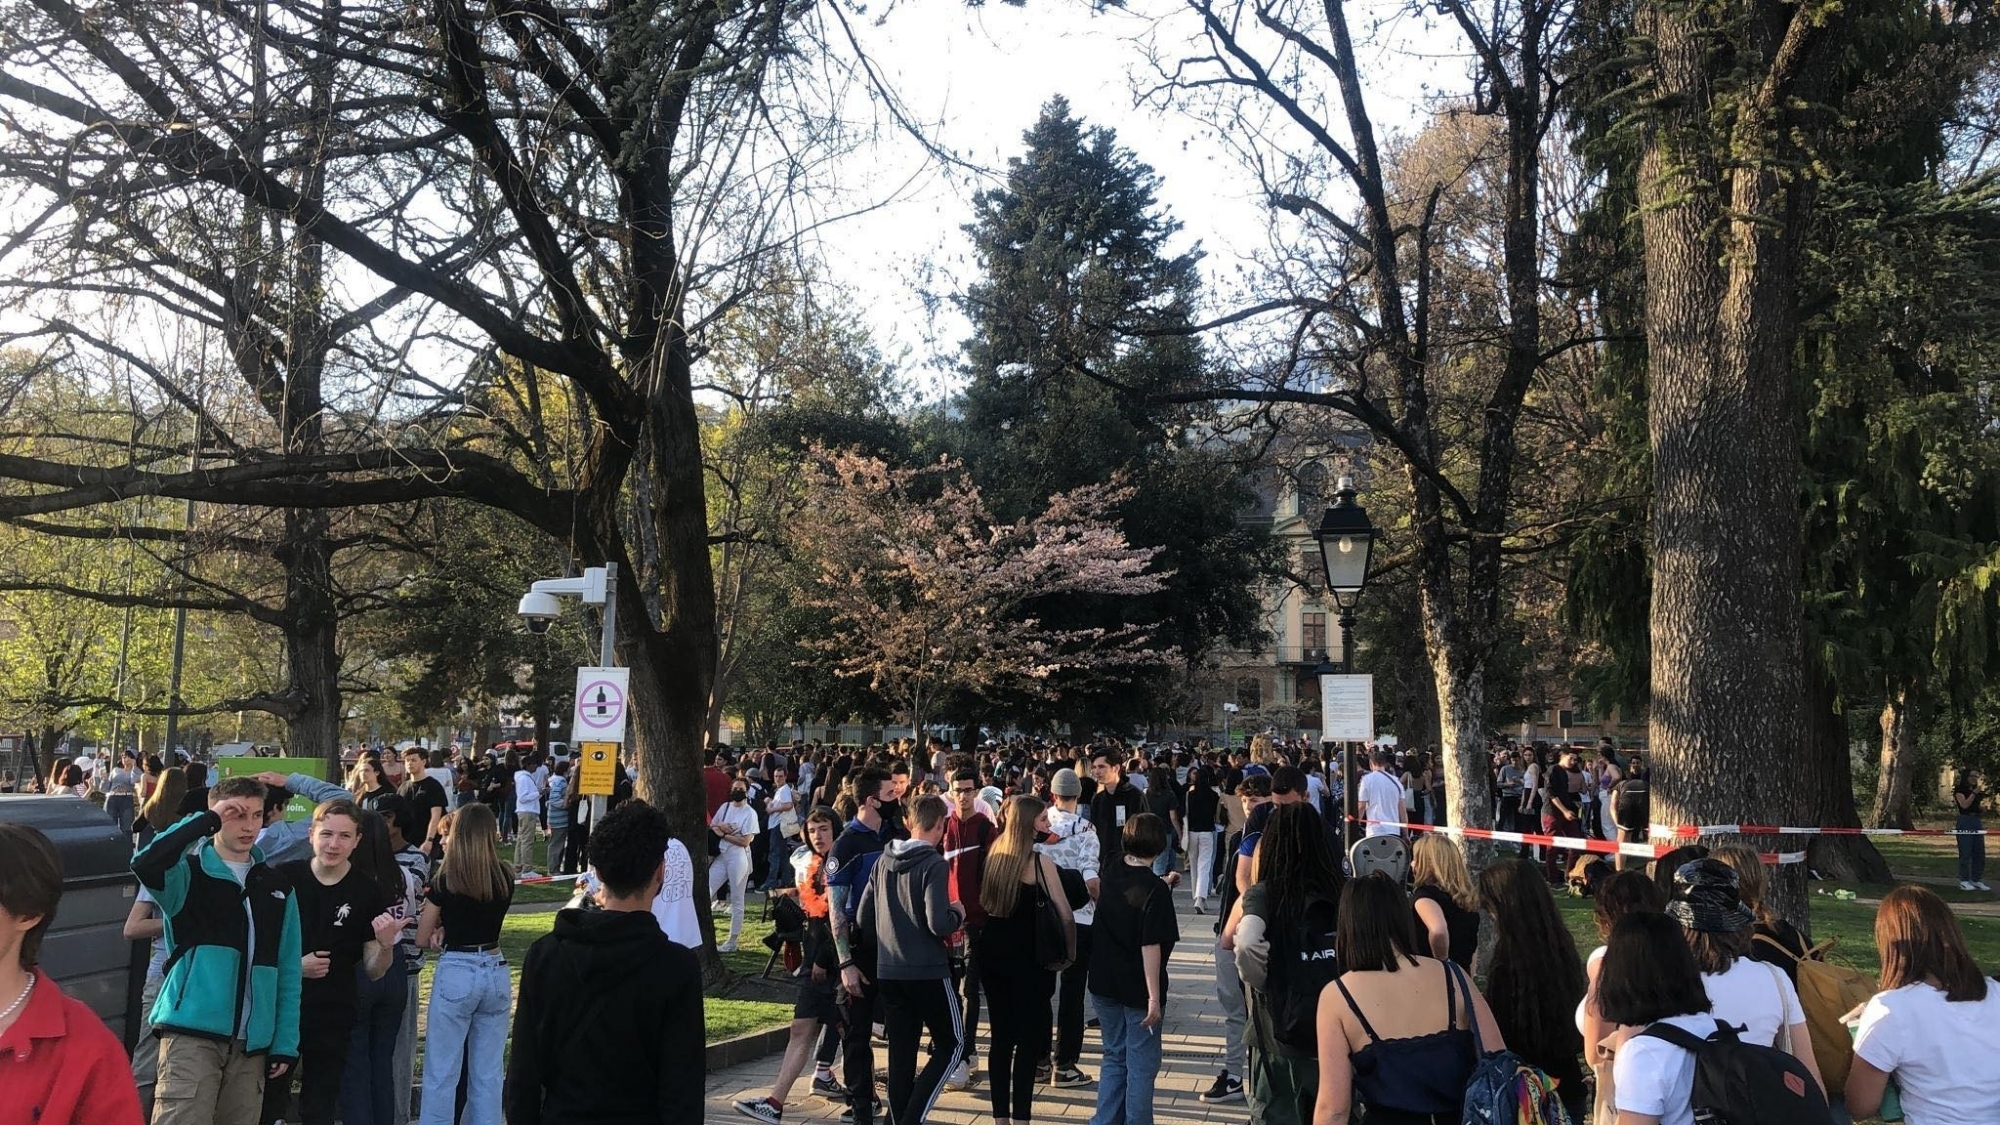 Le 1er avril dernier à la sortie des cours, il y avait beaucoup de monde sur la Planta. Les autorités s'attendent à une forte affluence entre jeudi et vendredi pour la fin de l'année scolaire.